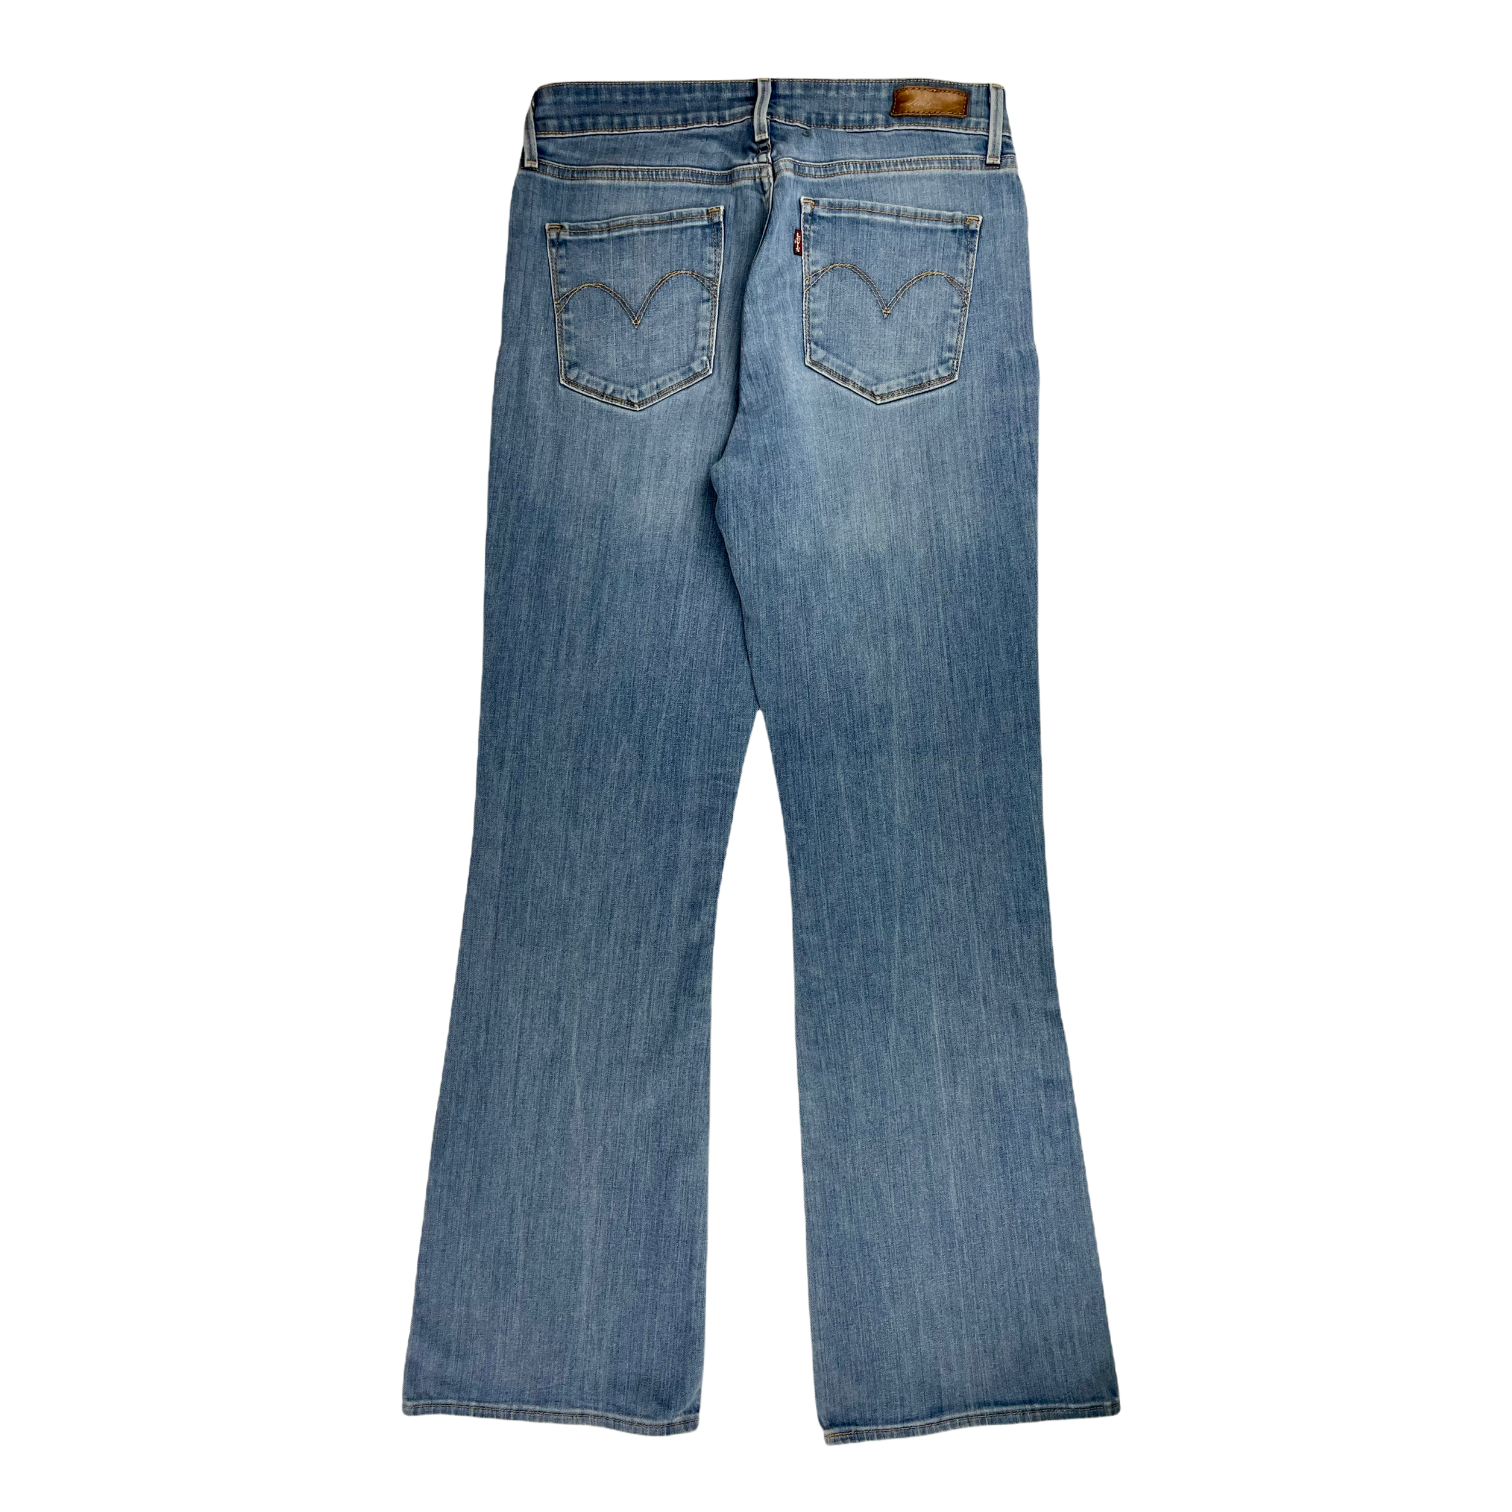 Vintage Levi's Bootcut Fit Jeans - Restorecph